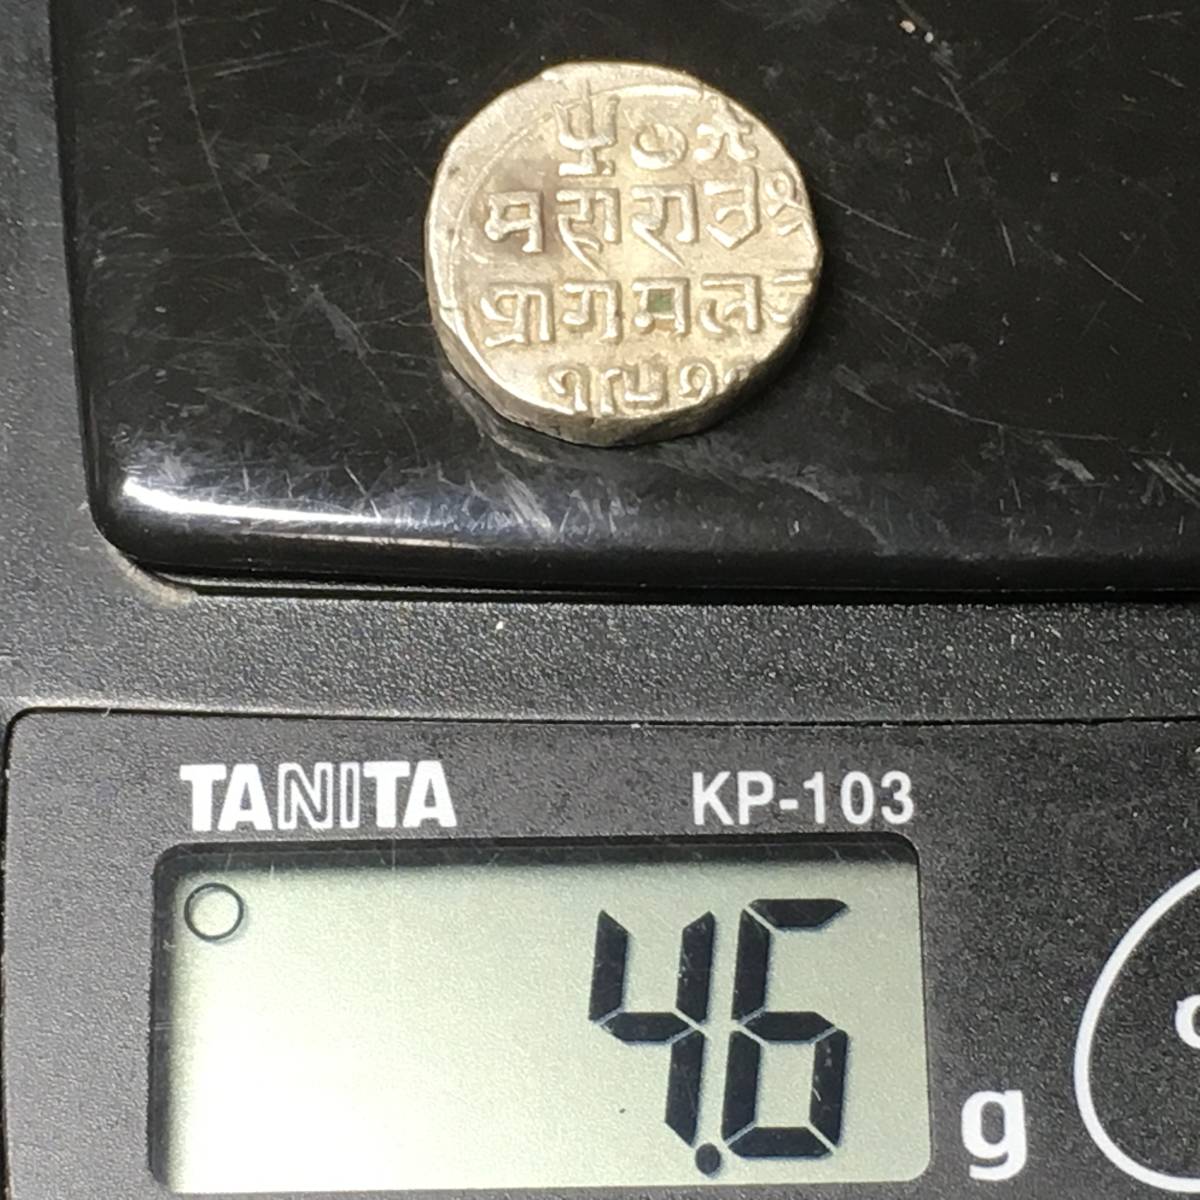 XXX-稀有/印度/銀幣**卡奇國家/老撾 - Puragumaruji（在位1698年至1715年的）1 - 古裡，15毫米，4.60克**美麗的 - 硬幣.. 原文:XXX-レア / インド / シルバーコイン**カッチ州 / ラオ-プラグマルジ (在位1698-1715’s) 1-Kori.,15mm.,4.60g**ビューティフル-コイン